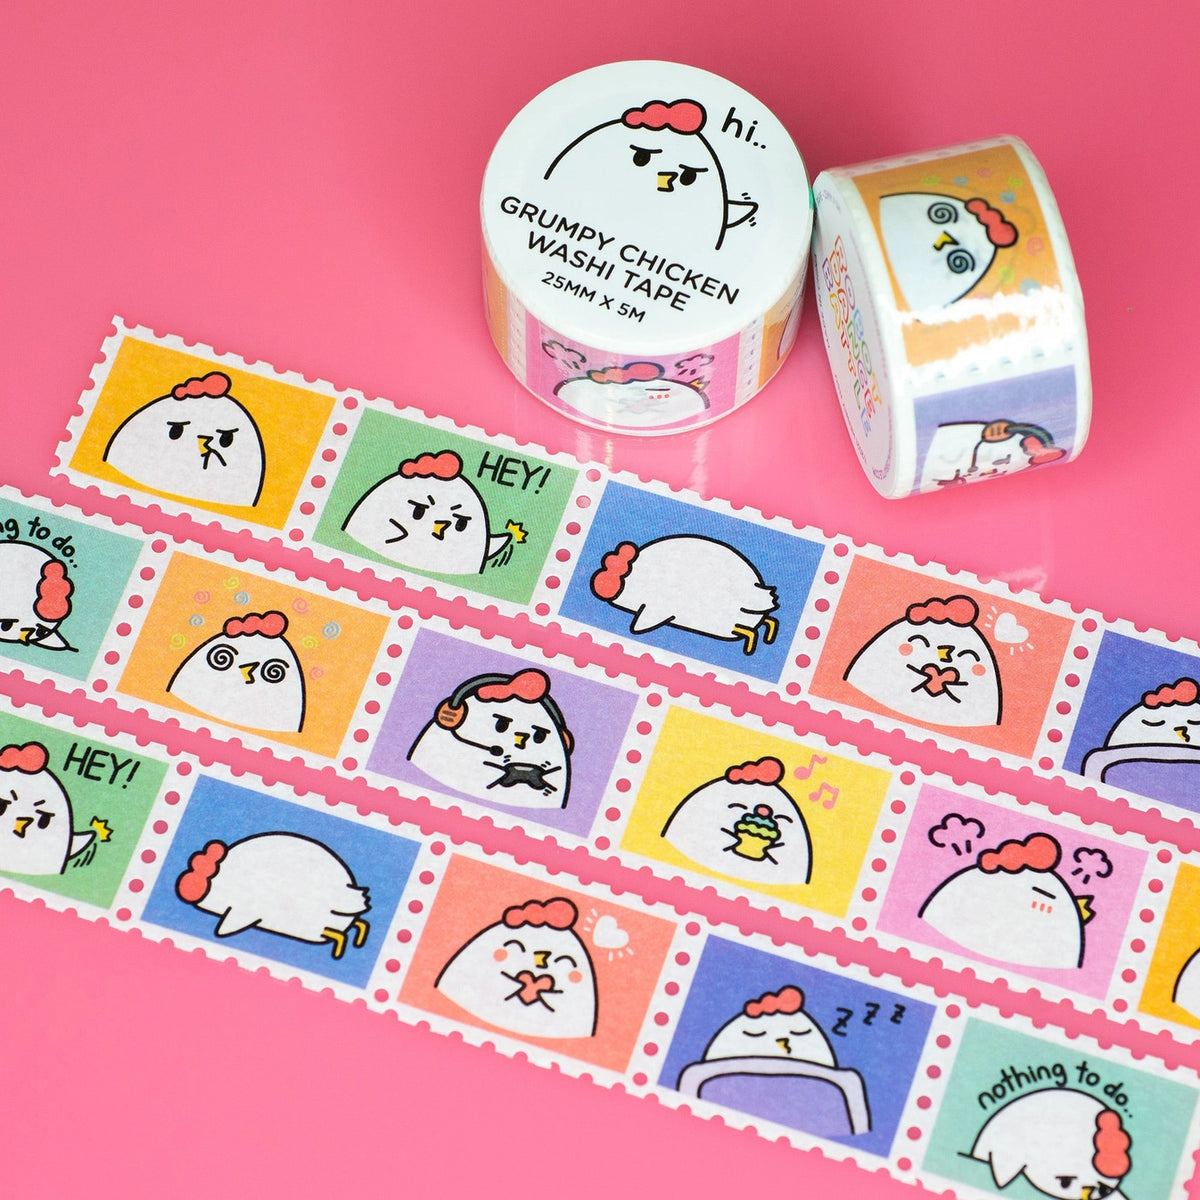 Robot Dance Battle - Grumpy Chicken Stamp Washi Tape